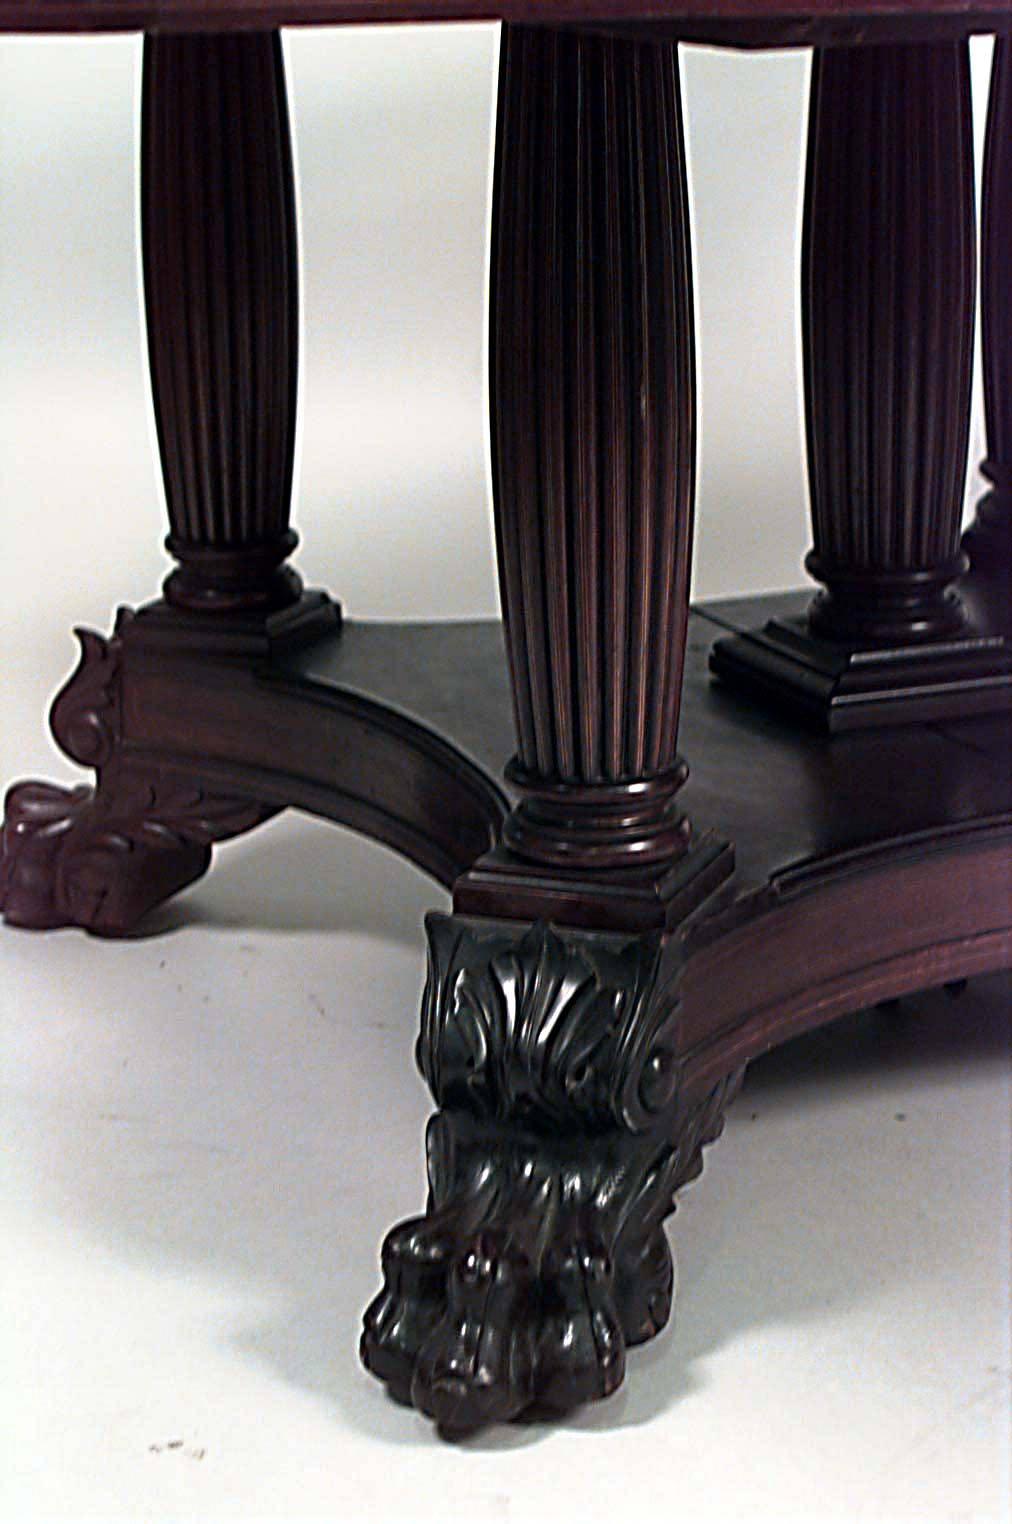 Table de salle à manger carrée Empire américain en acajou avec une bordure incrustée et reposant sur des pieds cannelés sur une base plate-forme avec des pieds griffes.
